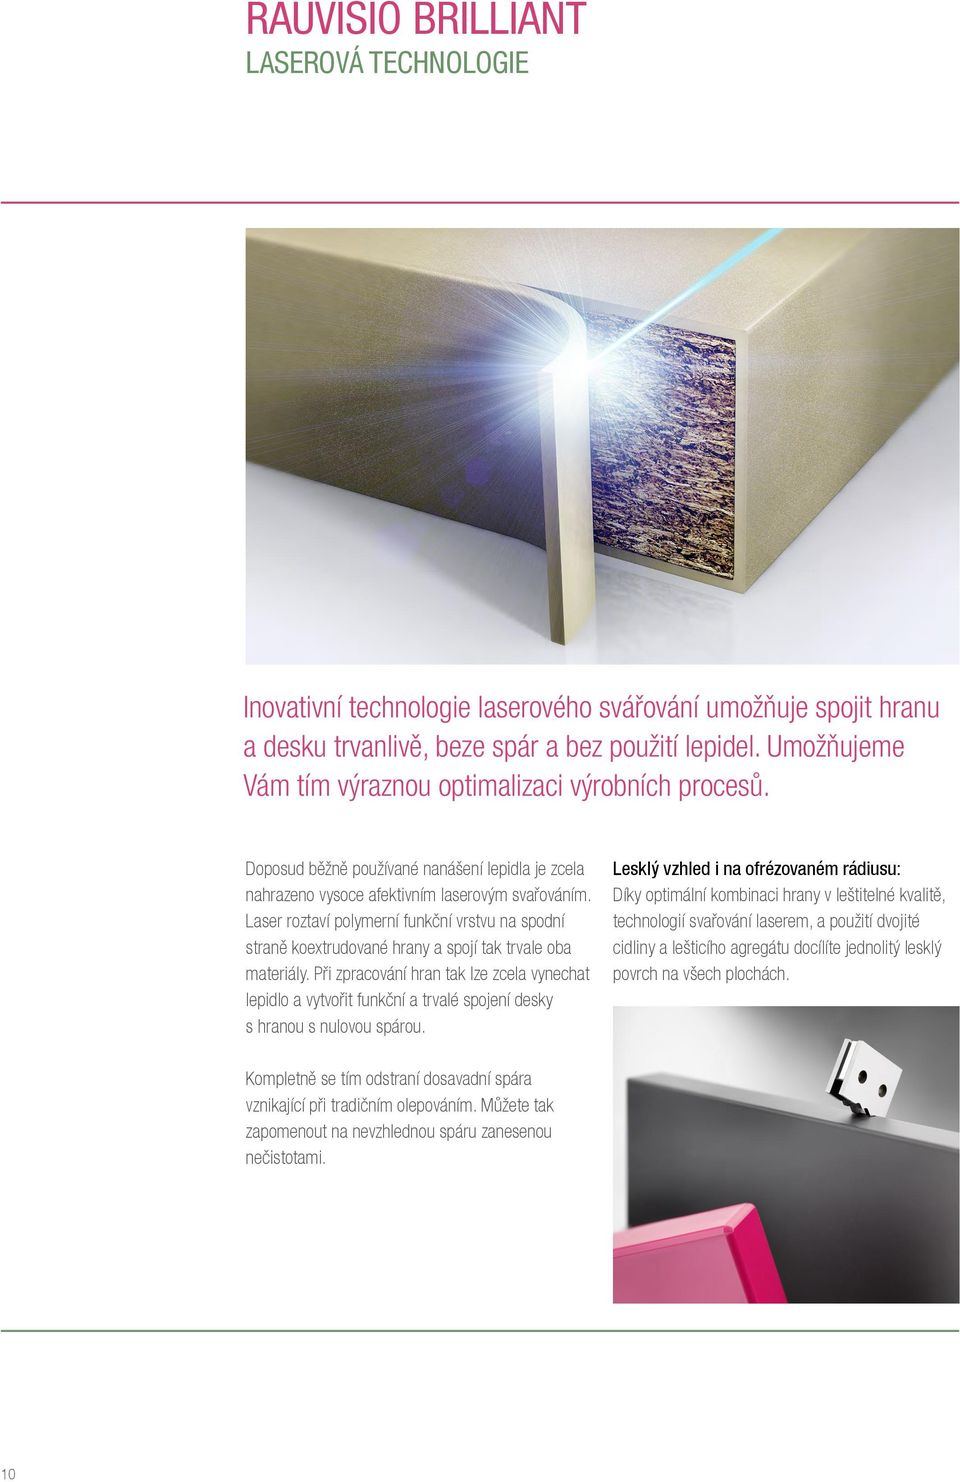 Laser roztaví polymerní funkční vrstvu na spodní straně koextrudované hrany a spojí tak trvale oba materiály.